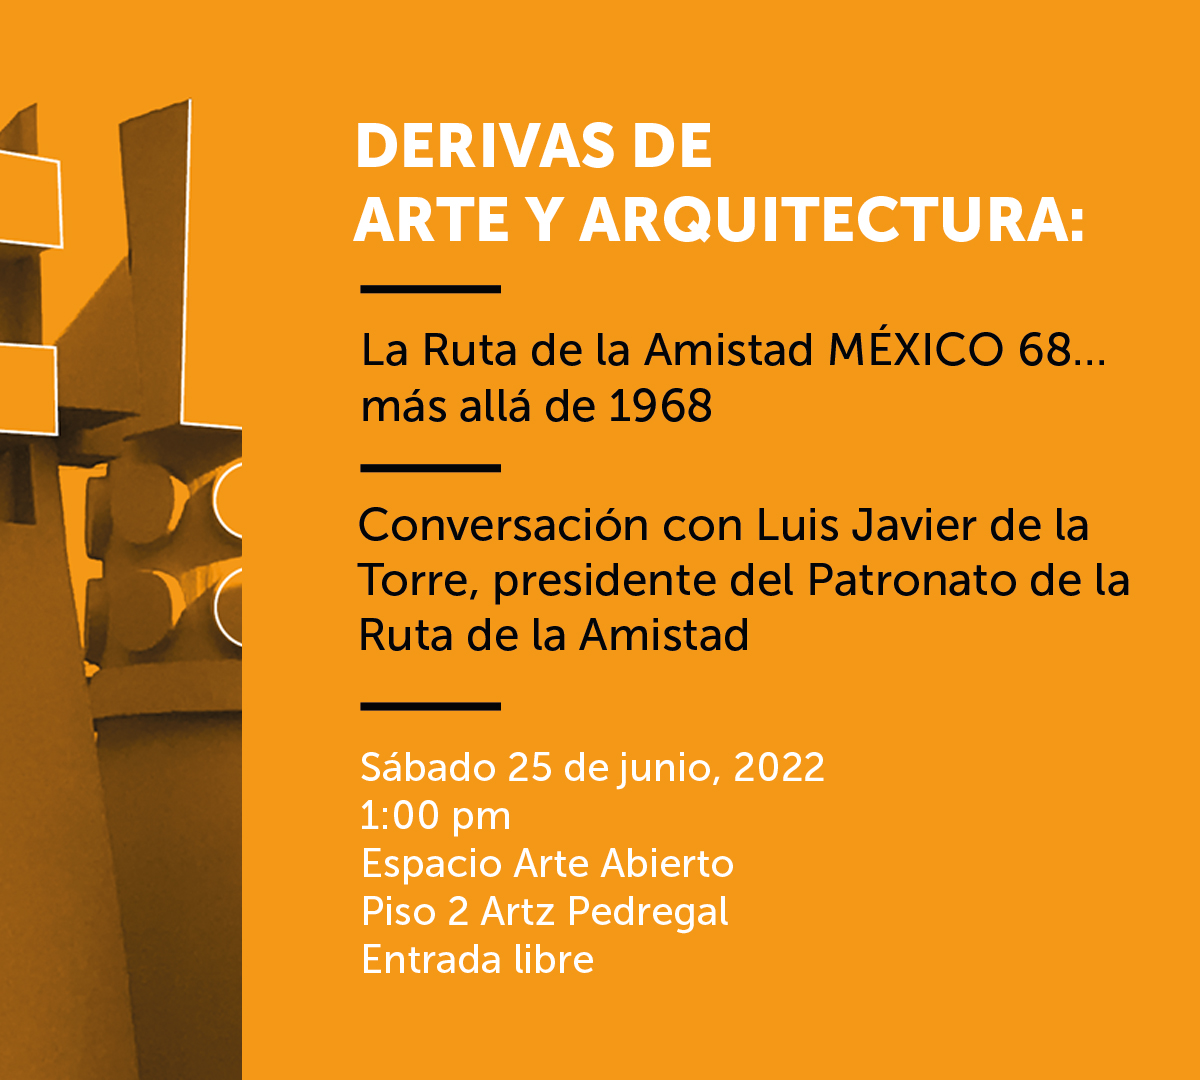 Arte Abierto. Derivas de Arte y Arquitectura. Ruta de la Amistad MEXICO68.